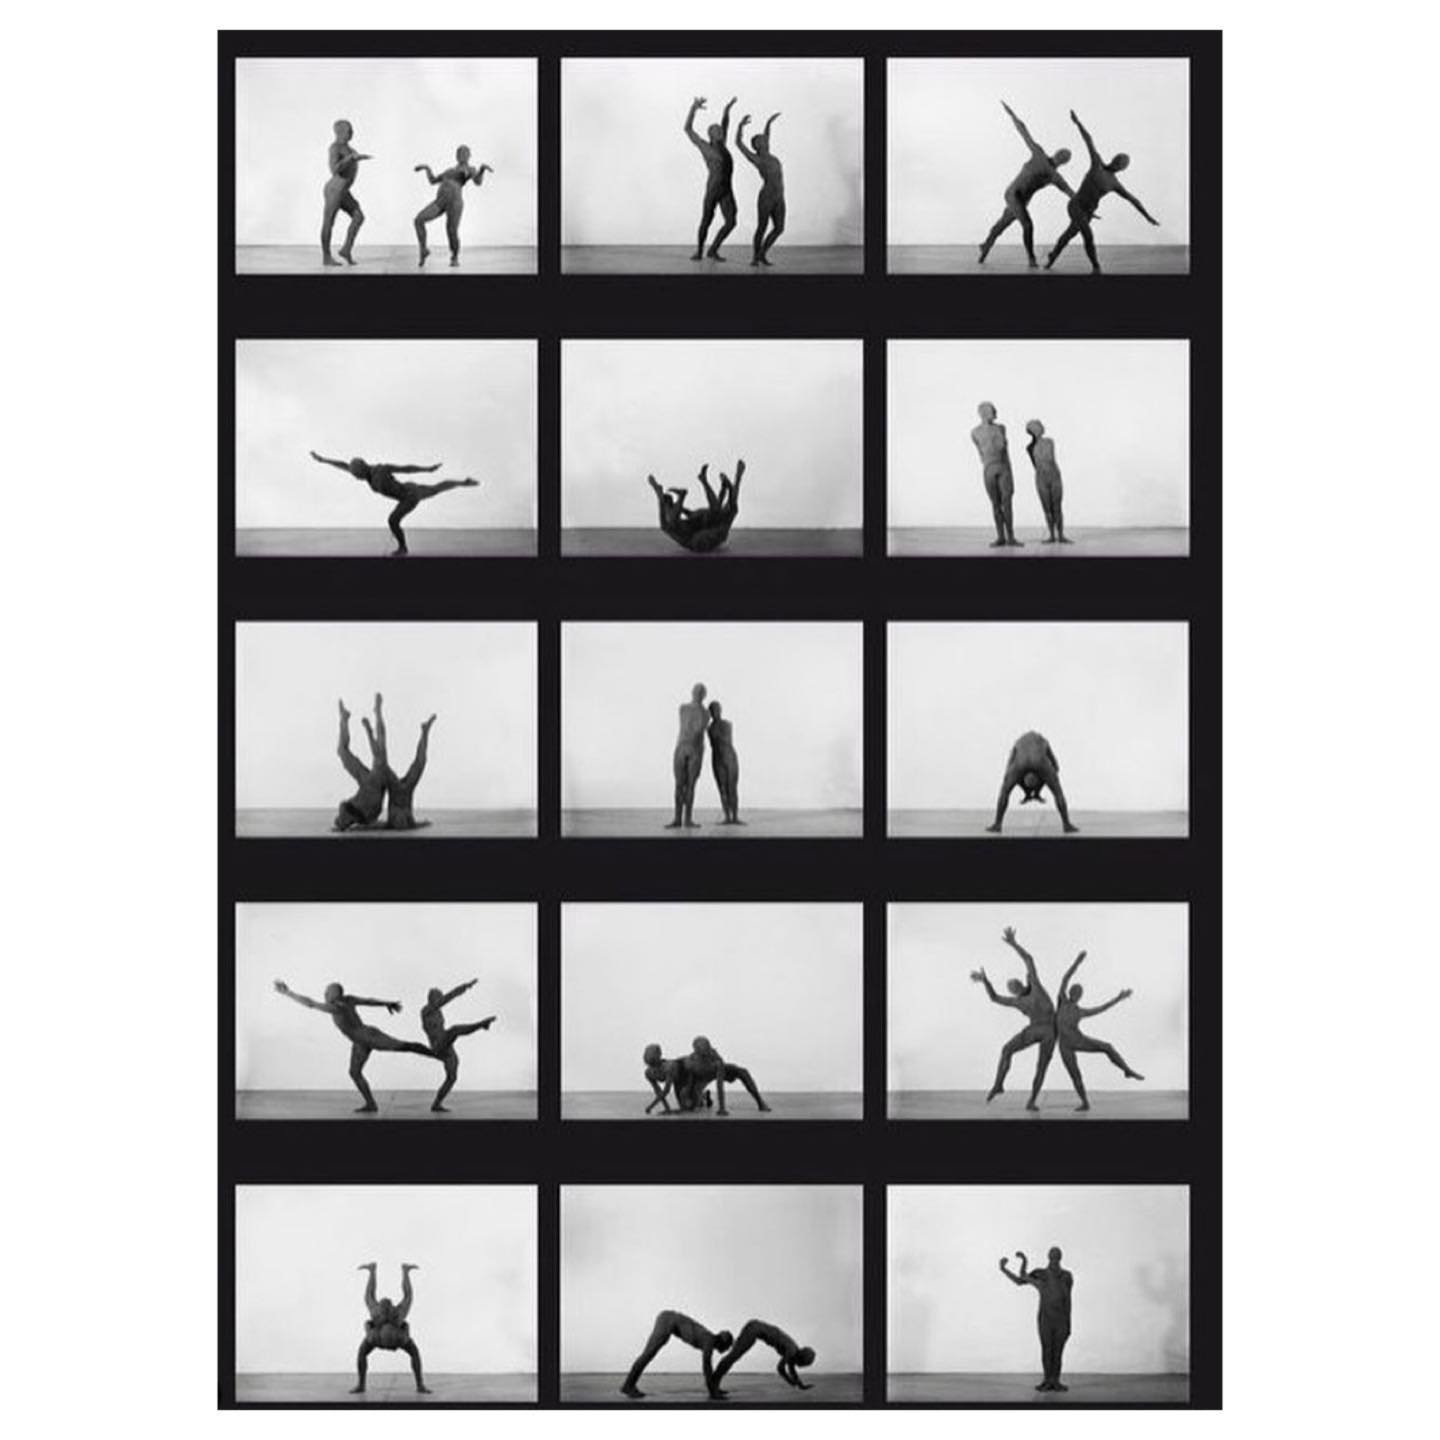 Movement study by mime artist Étienne Decroux 

#etiennedecroux